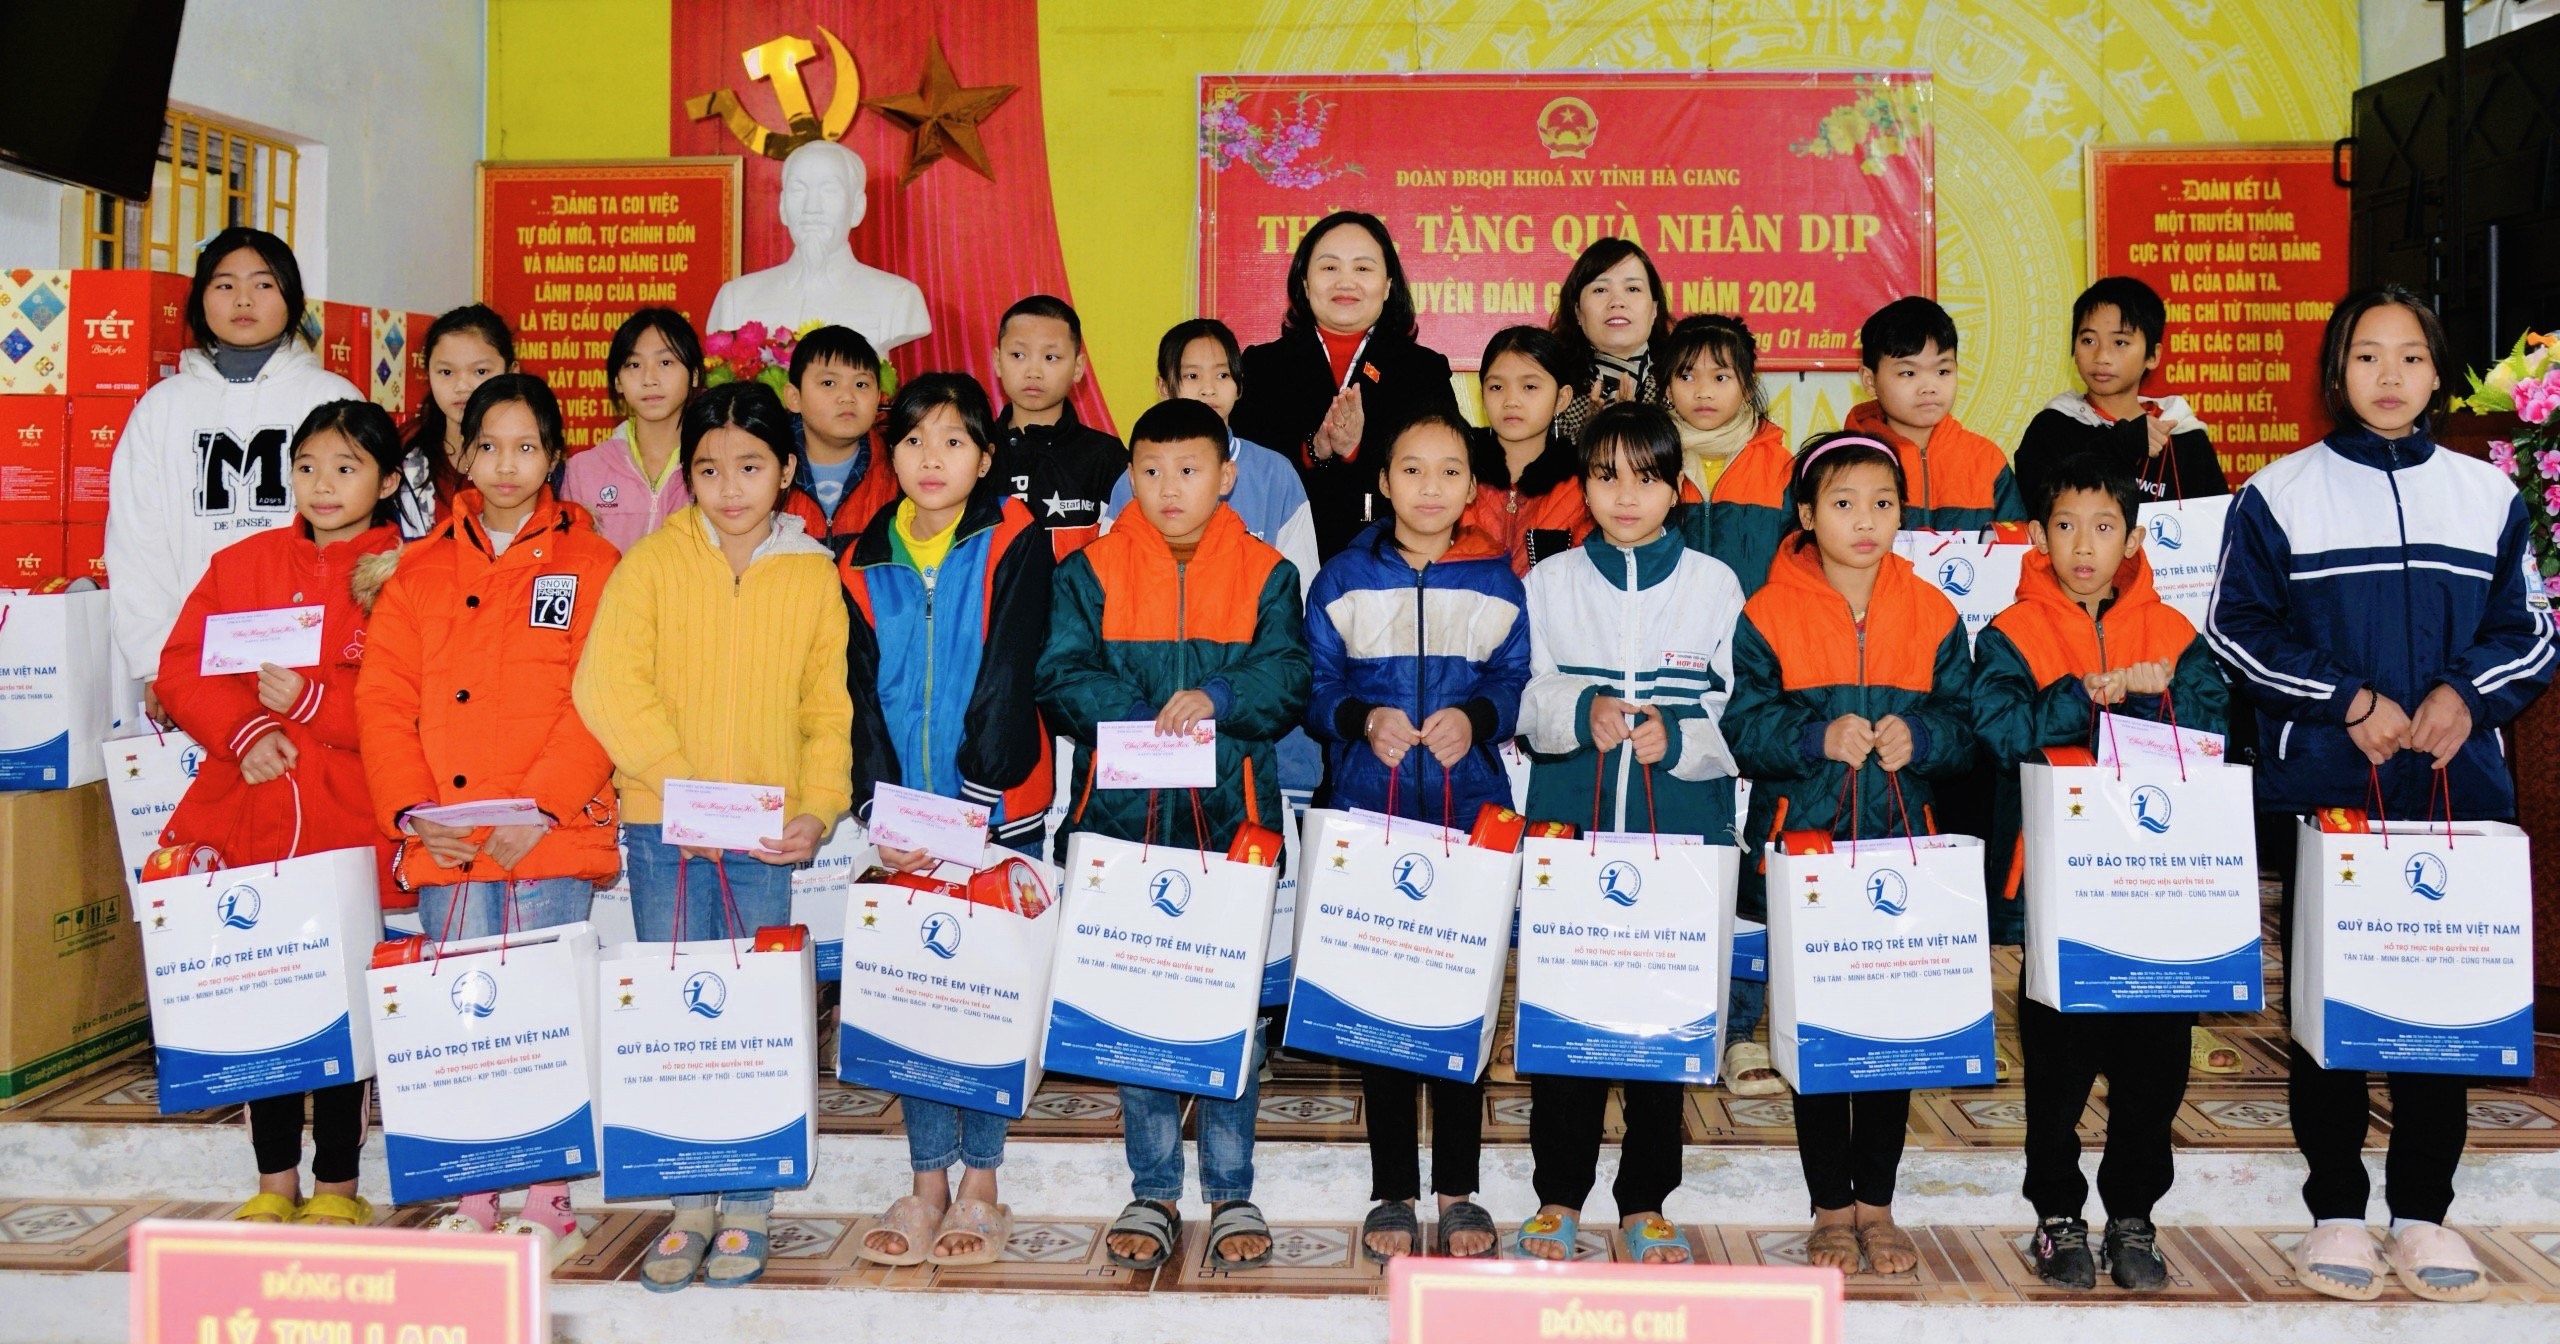 Đoàn ĐBQH tỉnh Hà Giang tặng quà Tết tại huyện Vị Xuyên